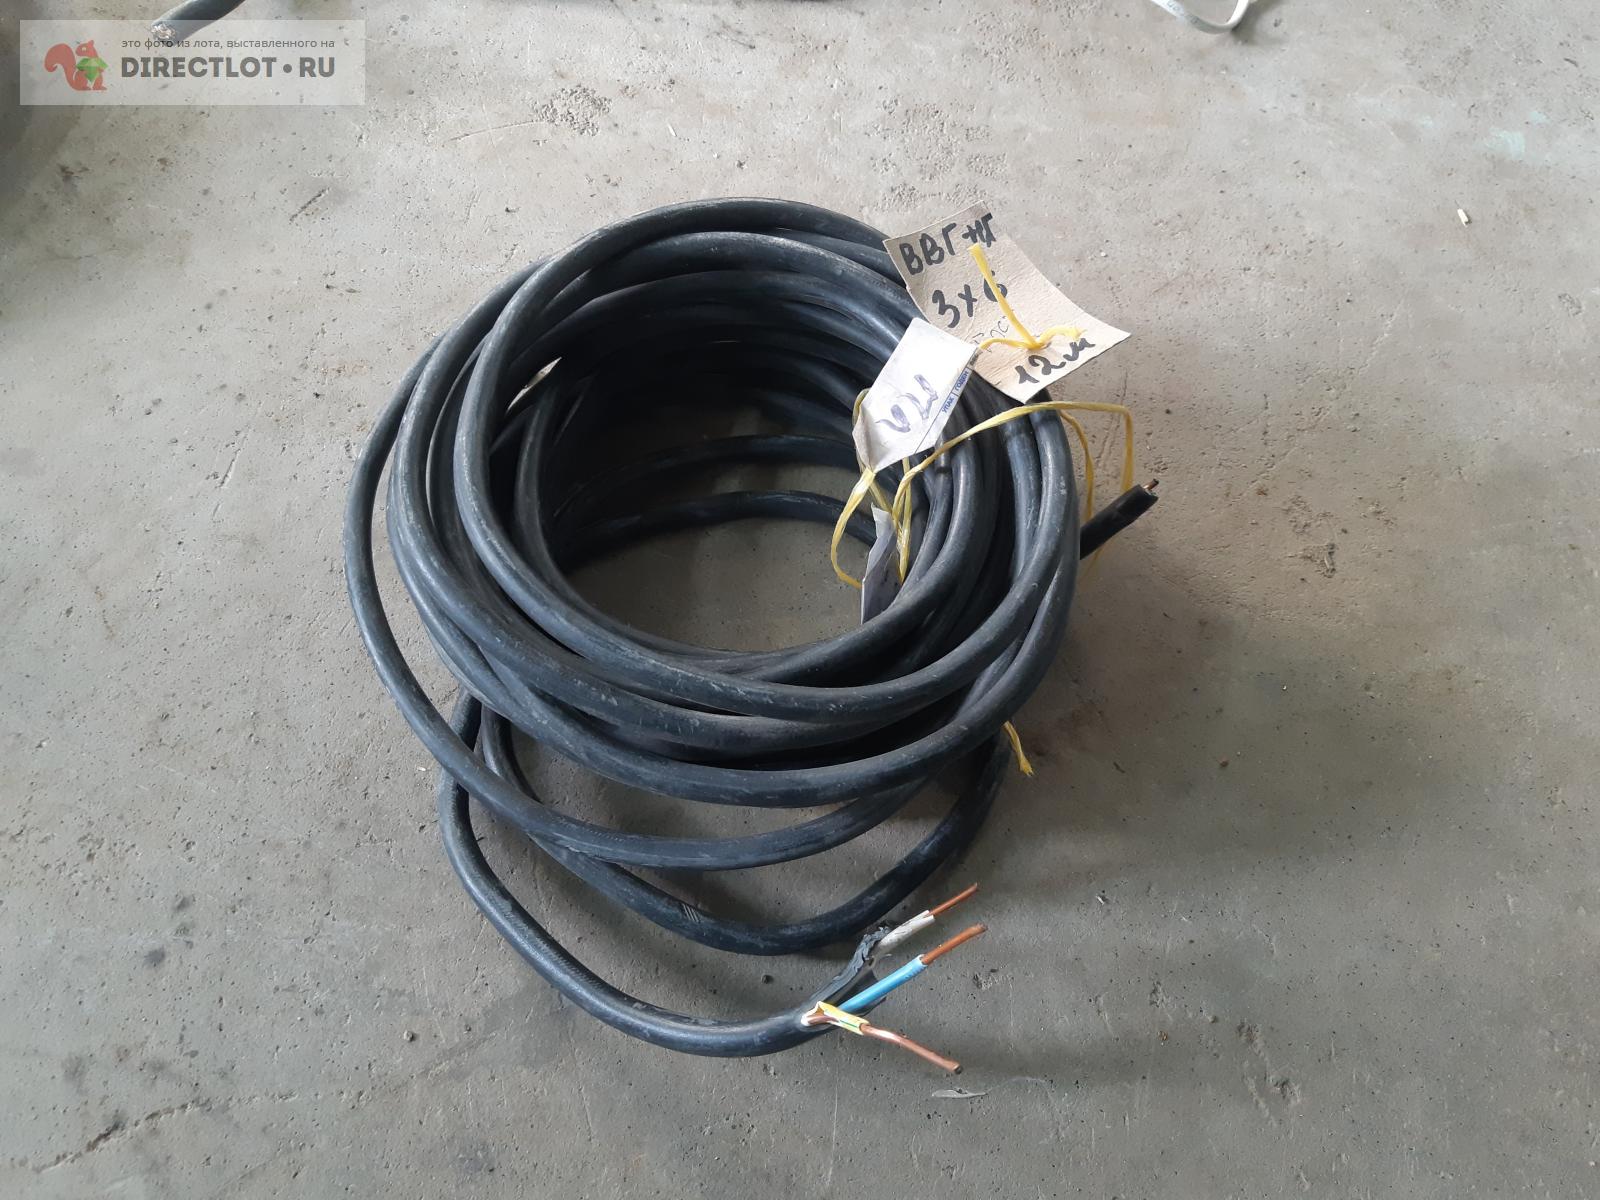 мощный ввг кабель 3х6 медный  в Орле цена 1600 Р на DIRECTLOT.RU .